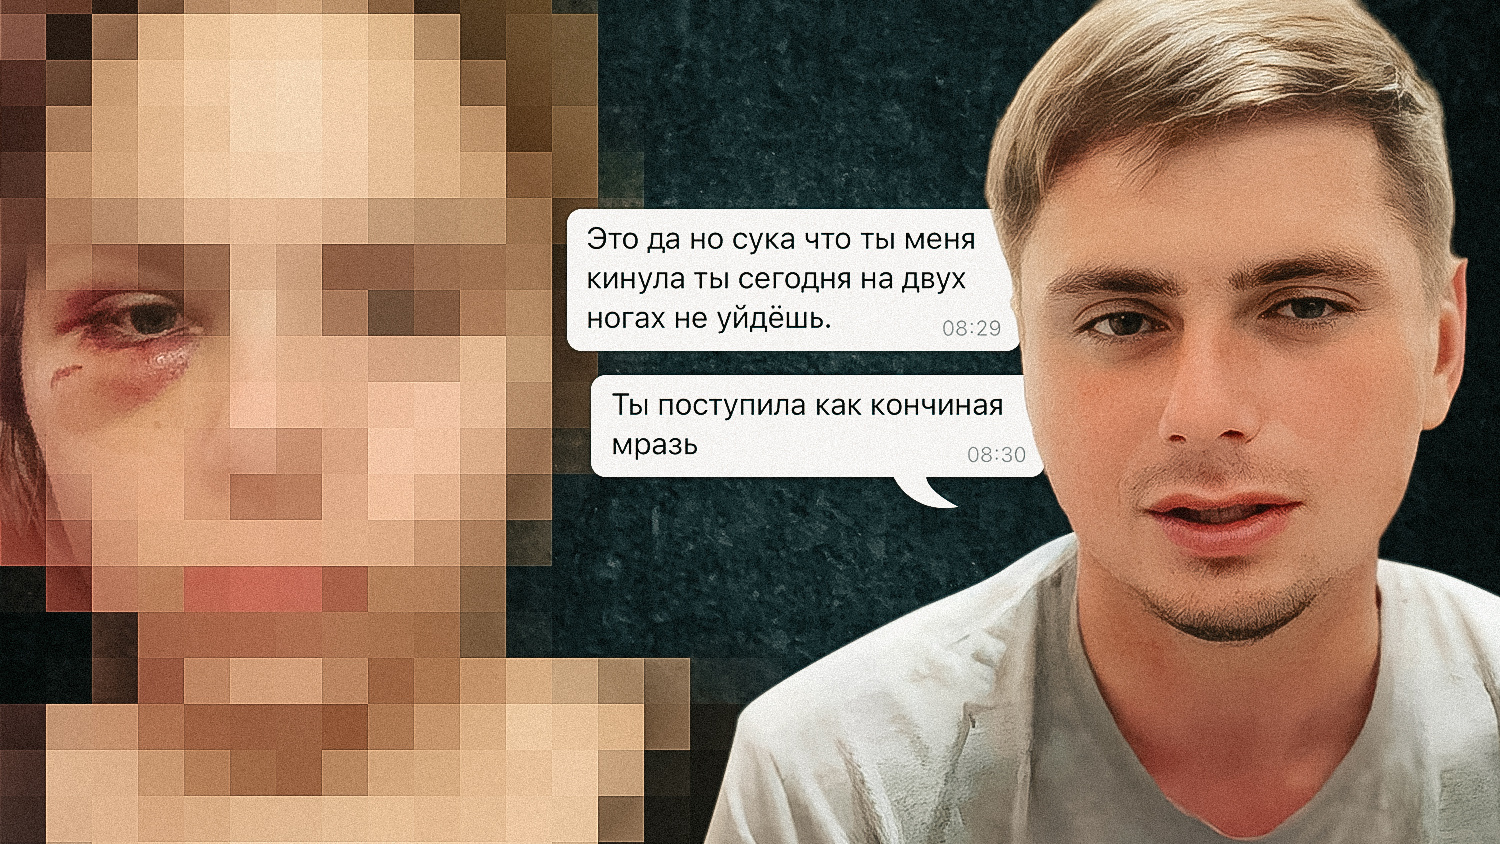 «Говорил, что ему ничего не будет»: сына новосибирского судьи обвинили в избиении девушки и угрозах убийством